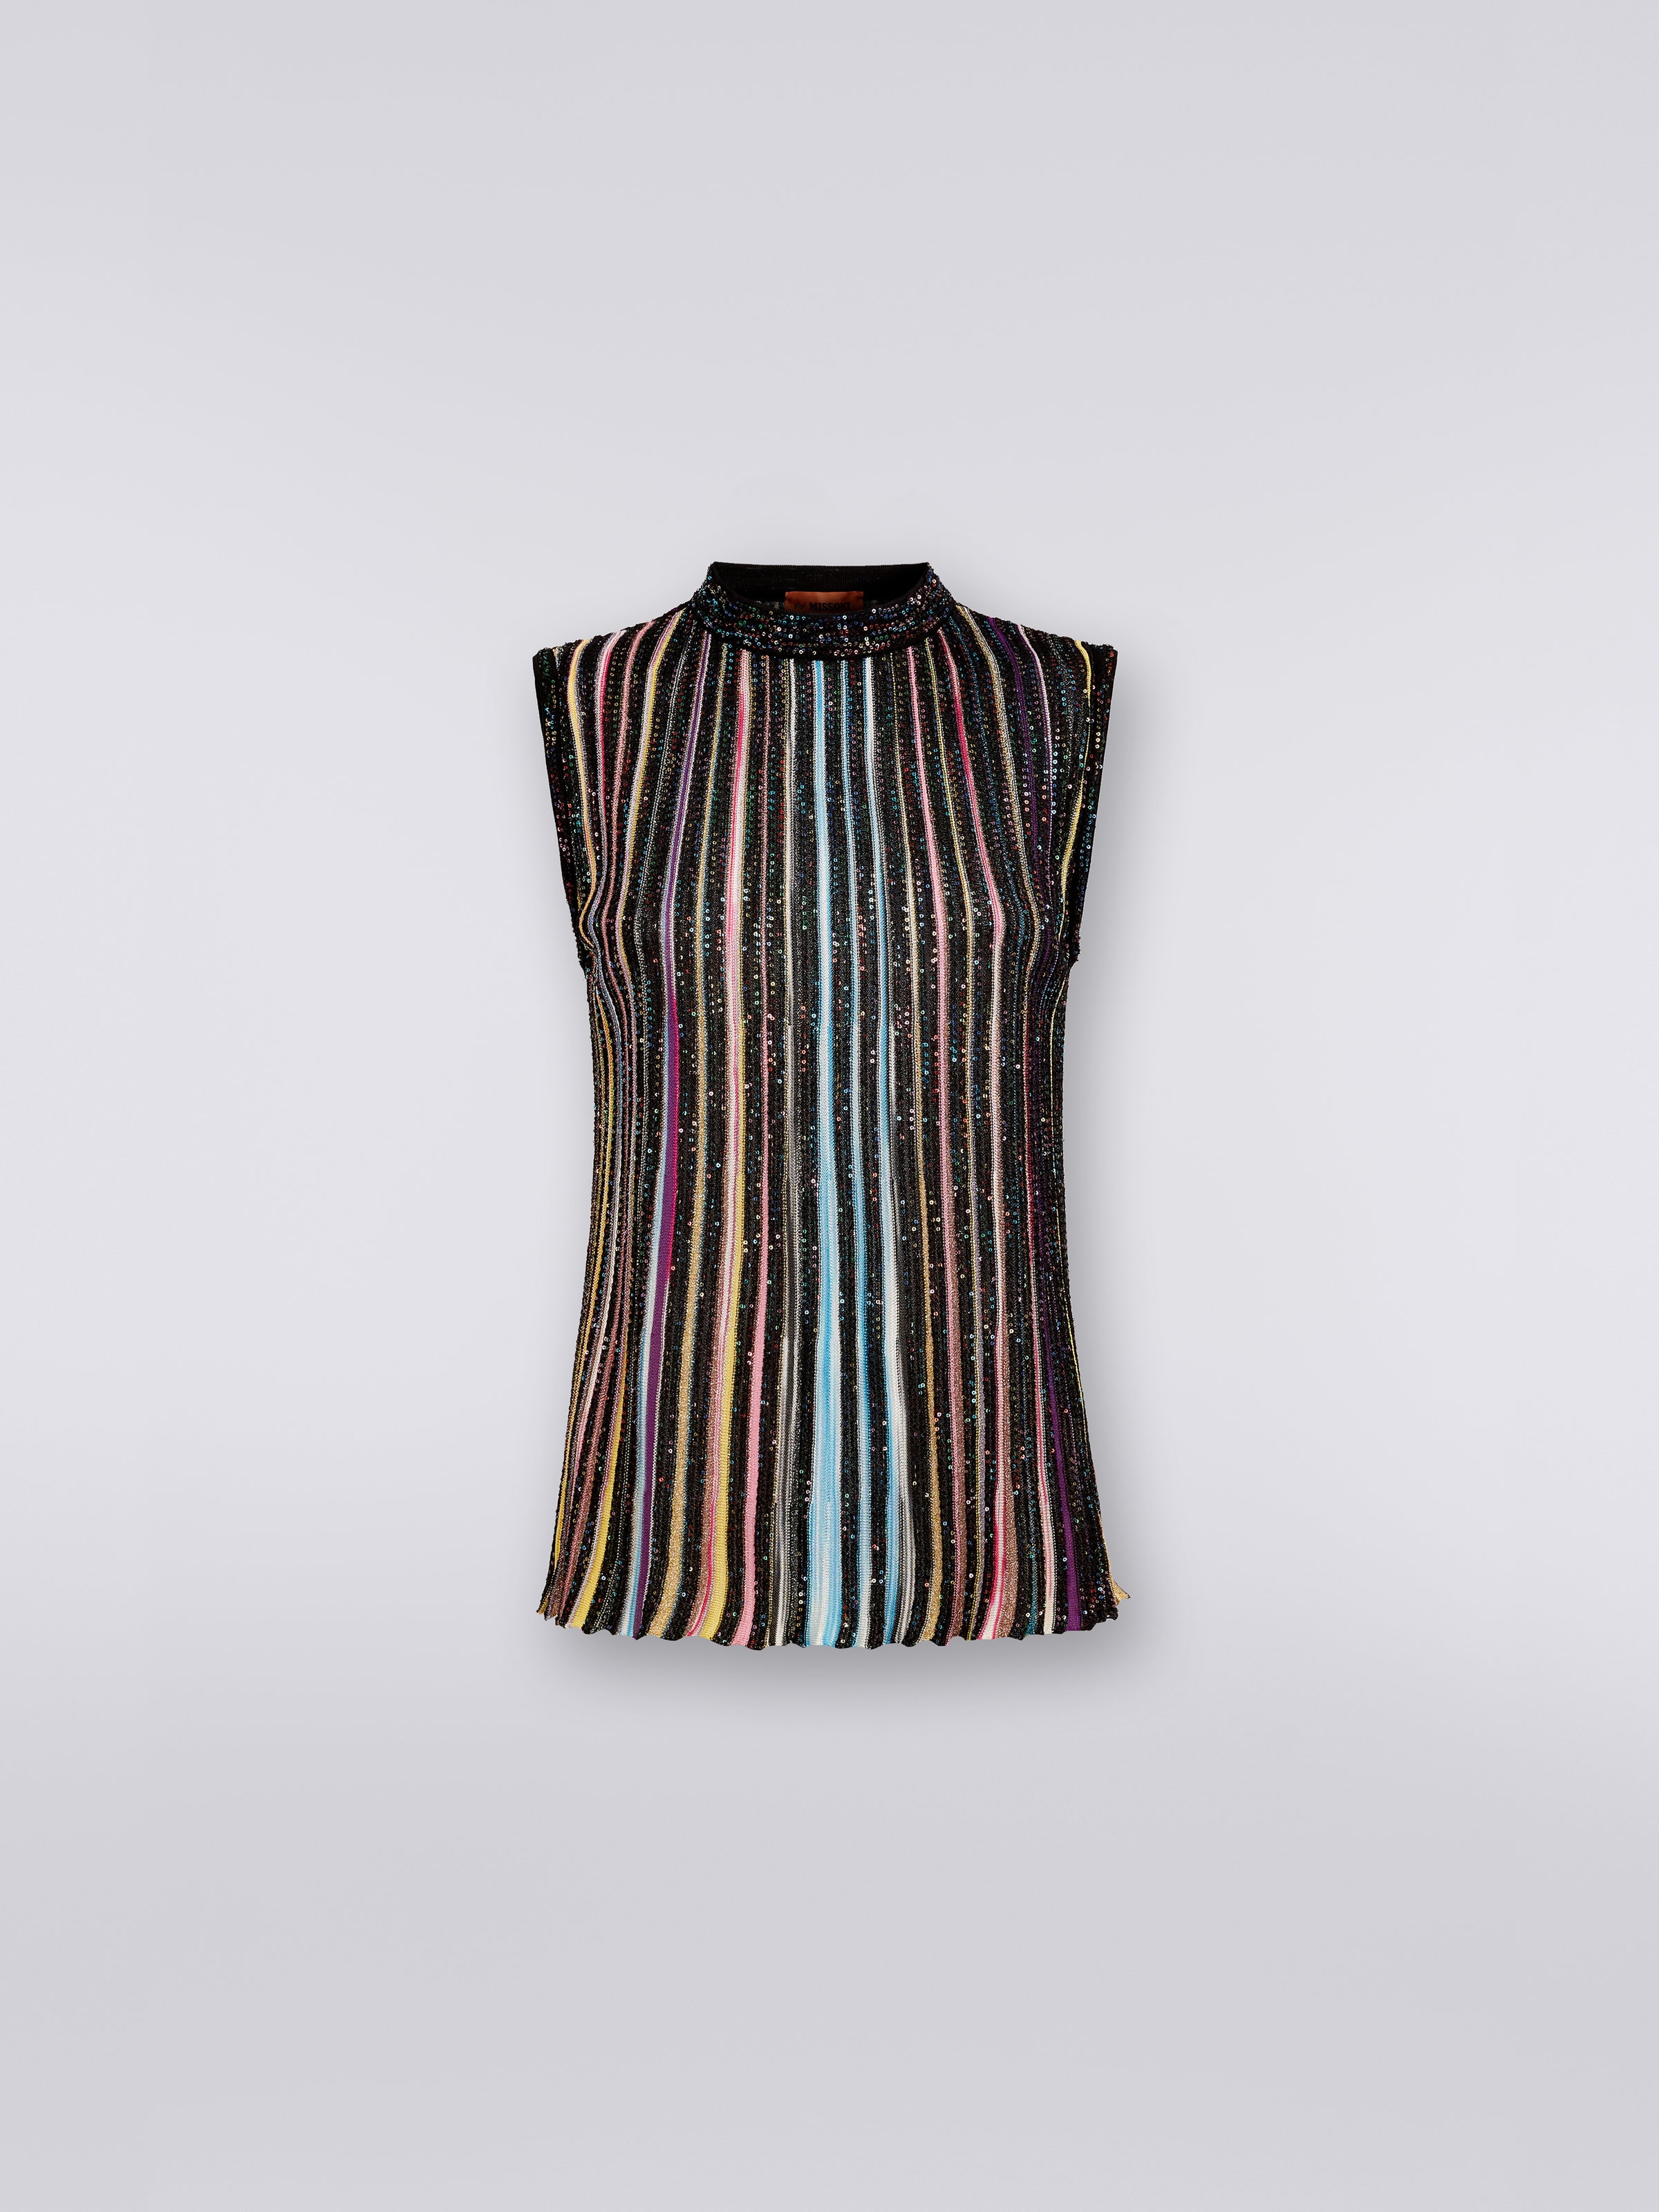 Camiseta sin mangas de algodón con lentejuelas, Negro & Multicolor - 0